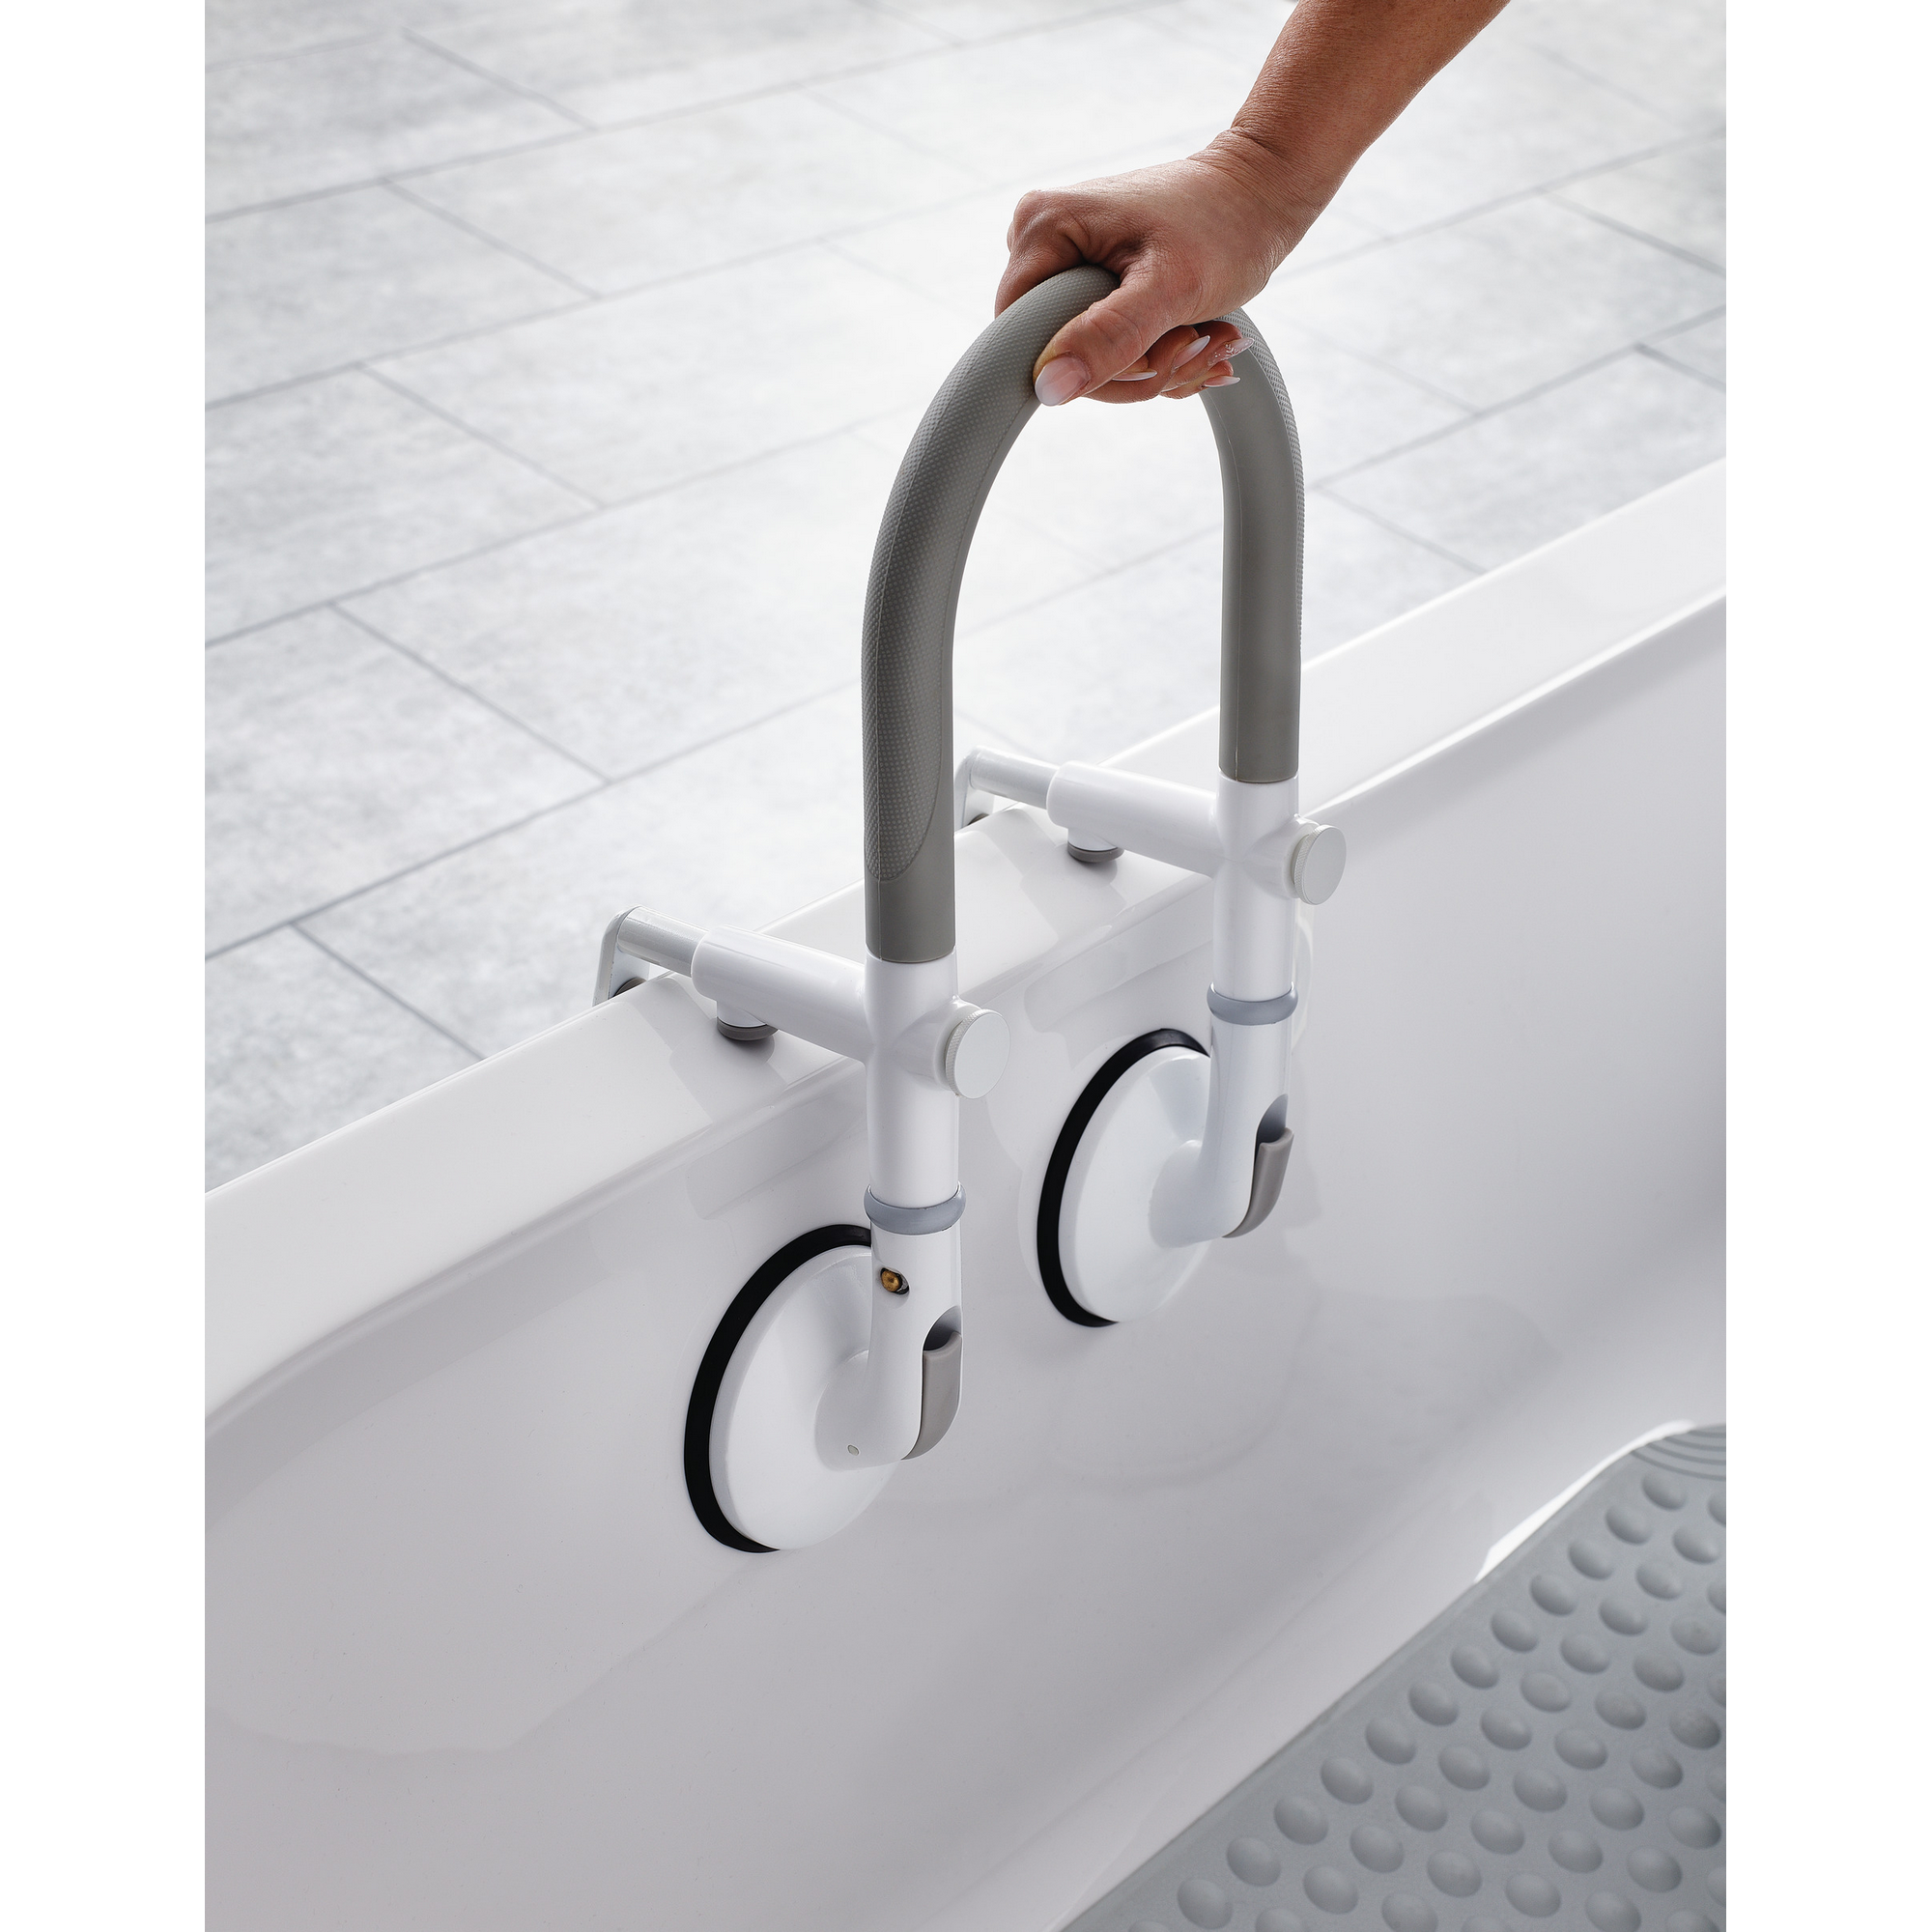 Badewannen-Einstiegshilfe 'Premium' mit Saugern bis 120 kg weiß/grau + product picture